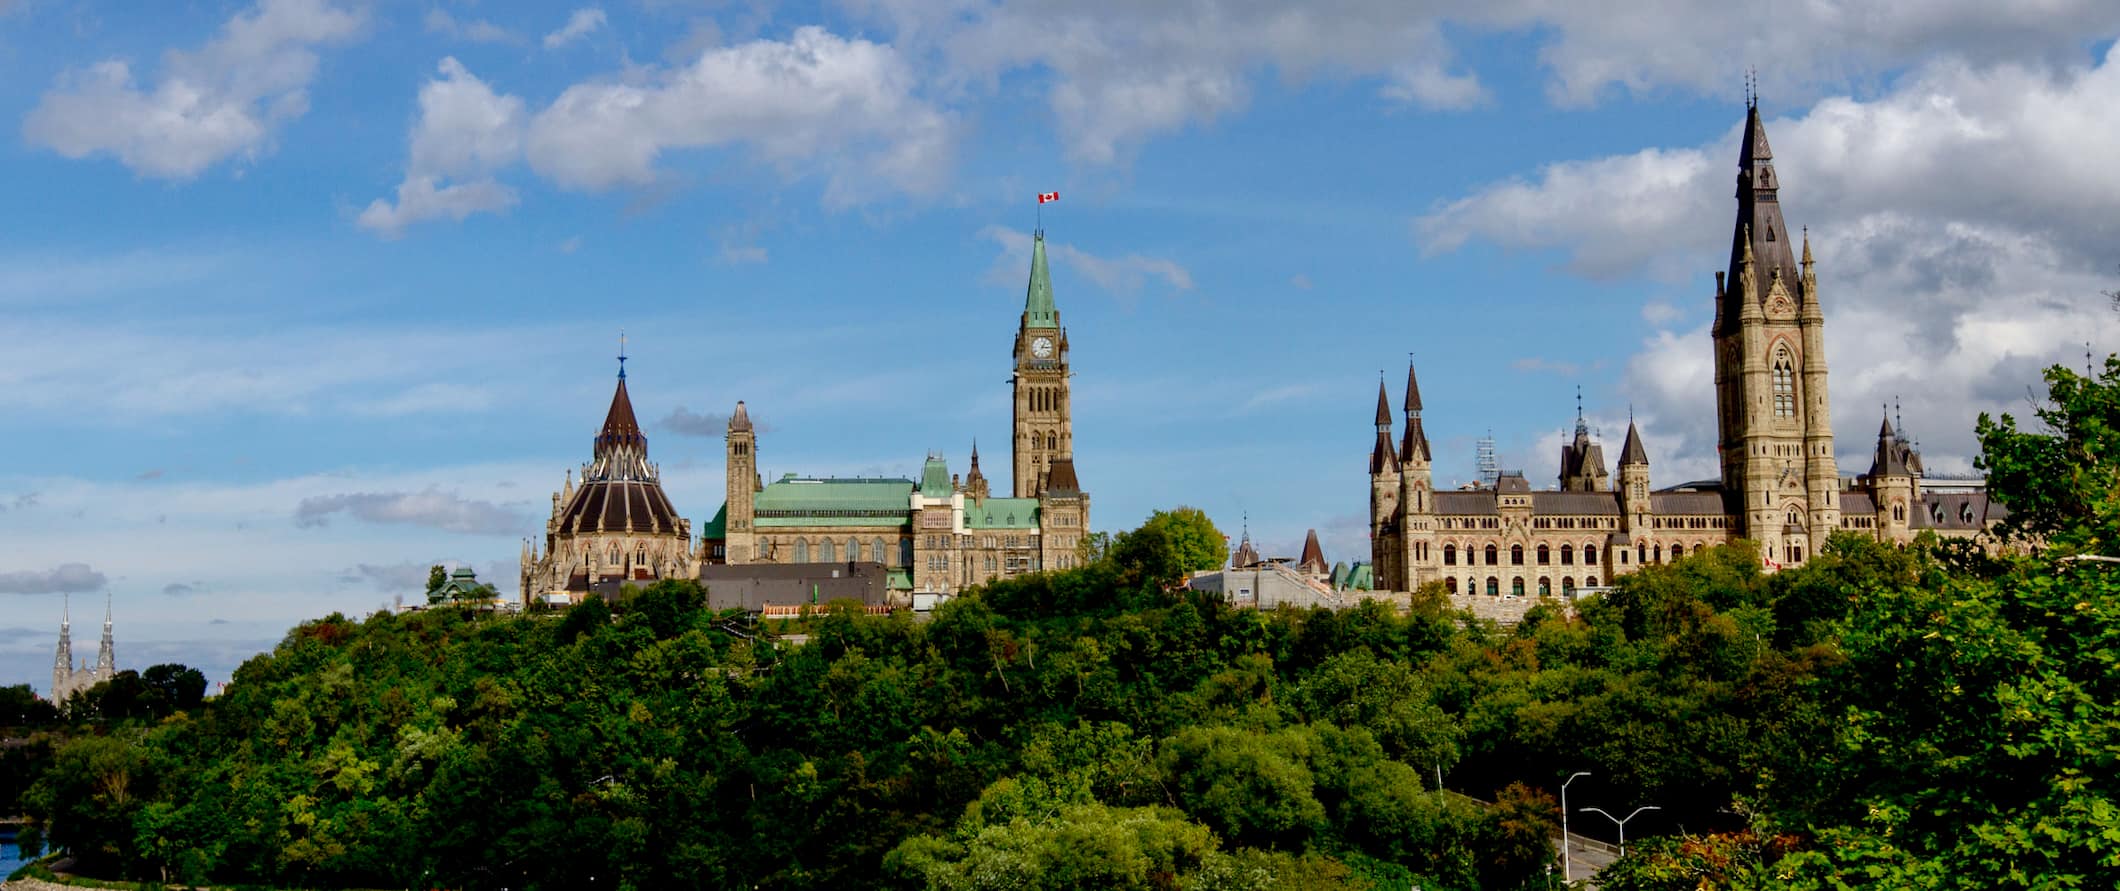 Uma vista do horizonte de Ottawa, Canadá, mostrando os edifícios do Parlamento cercados por árvores verdes exuberantes durante o verão.